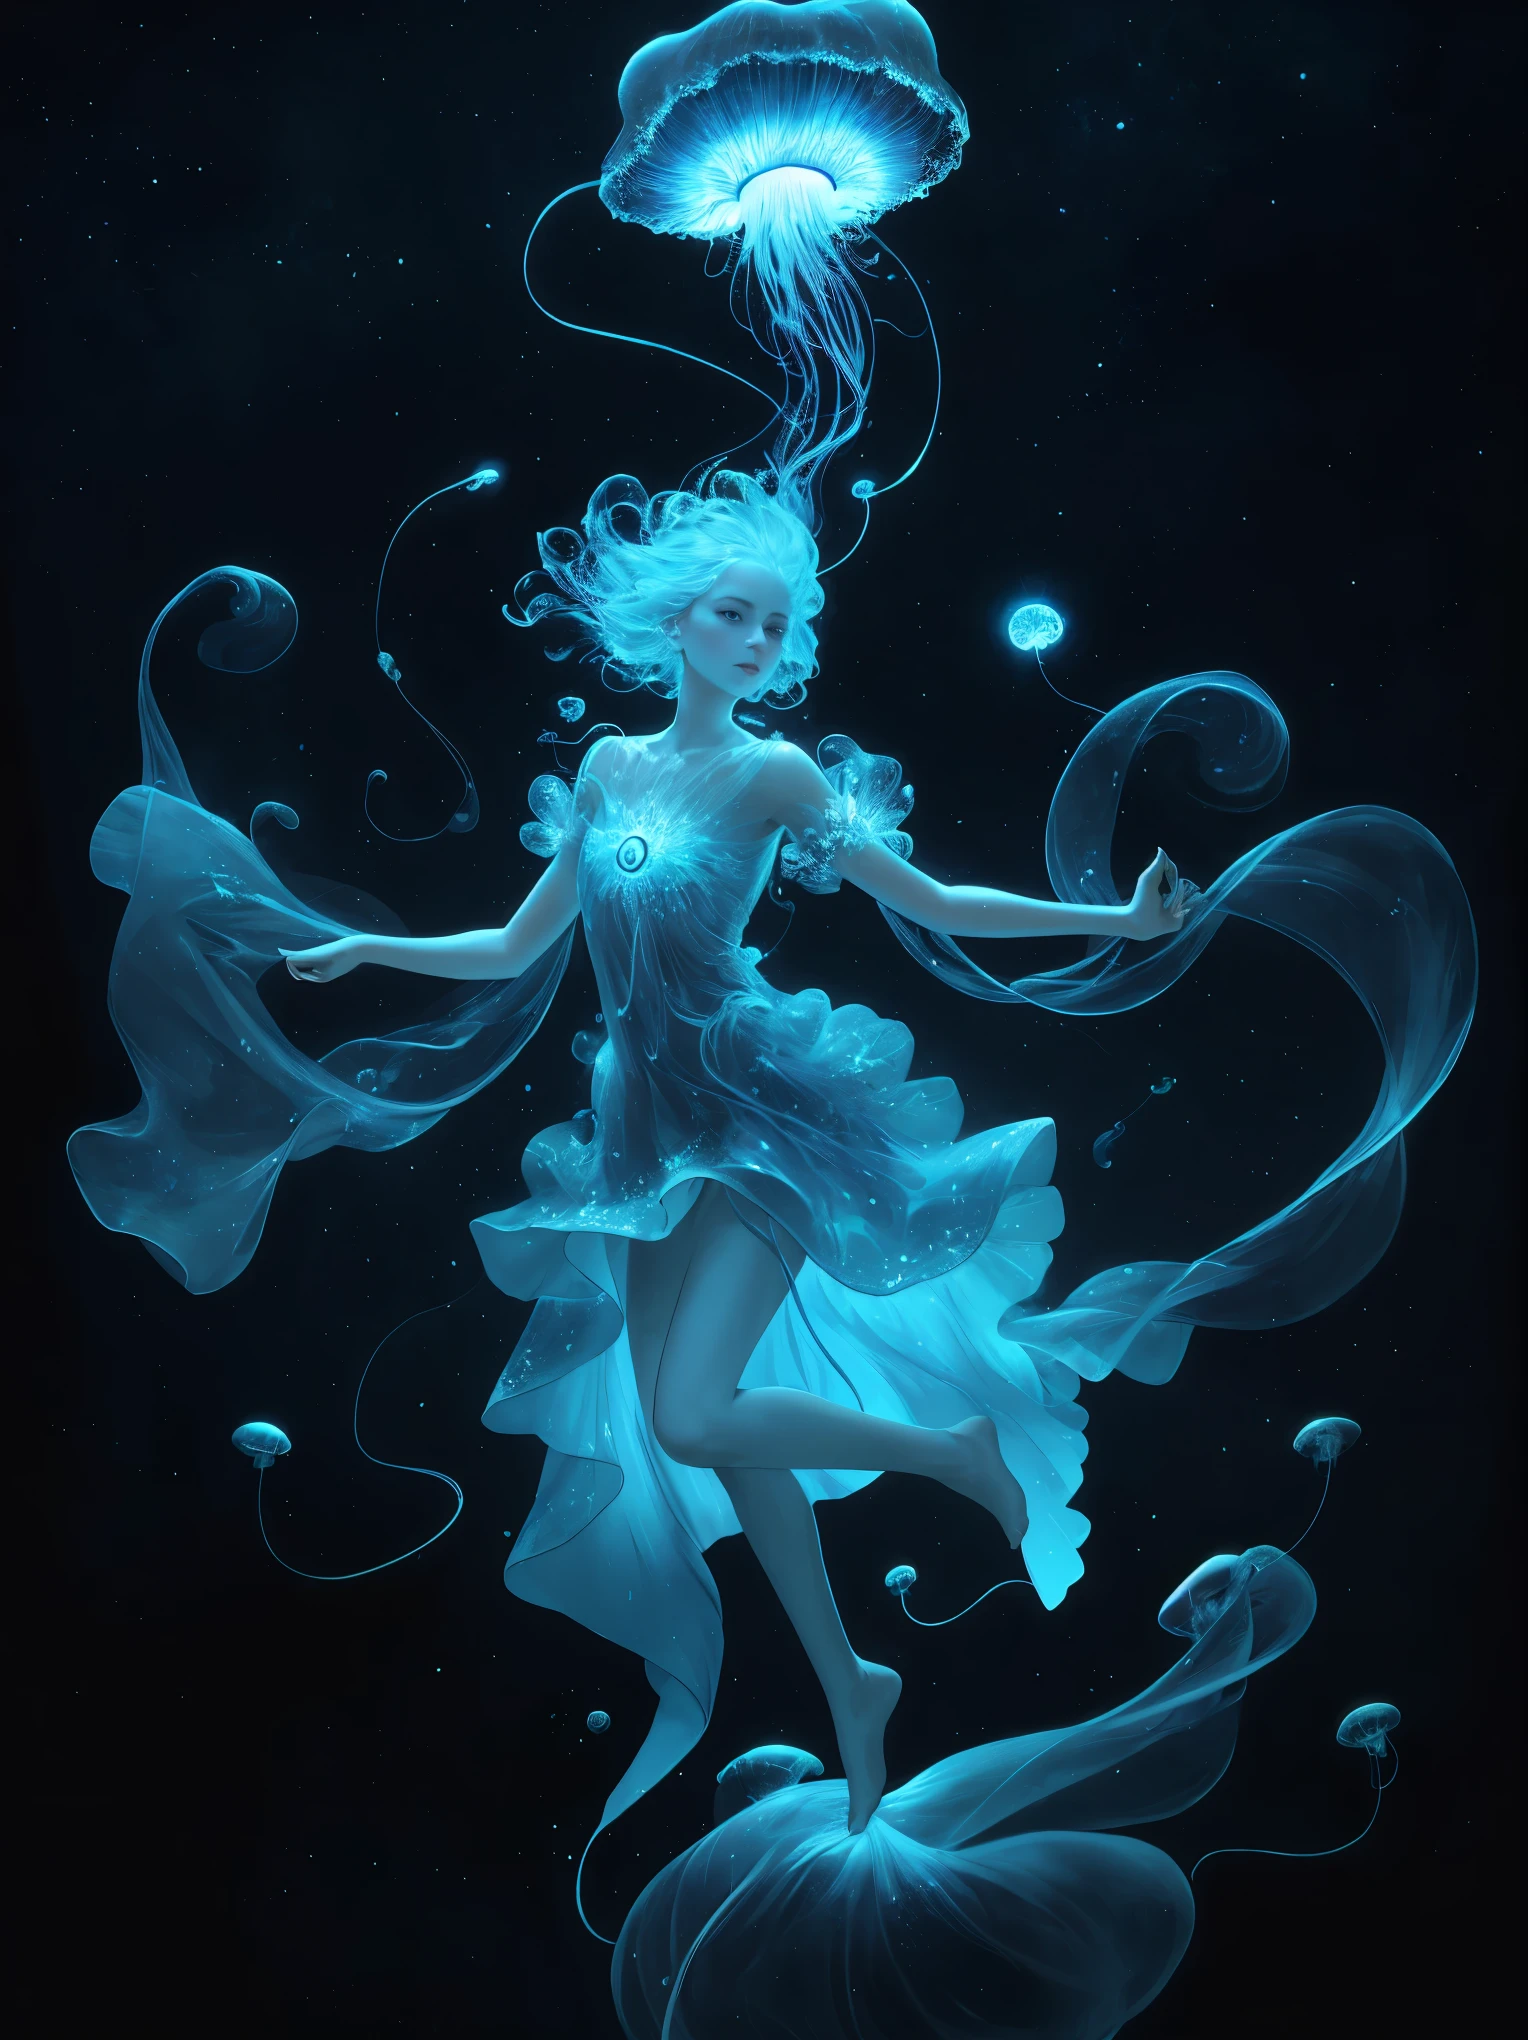 Небесная медуза, плавающий в космосе с биолюминесцентными щупальцами, создающими космический танец.